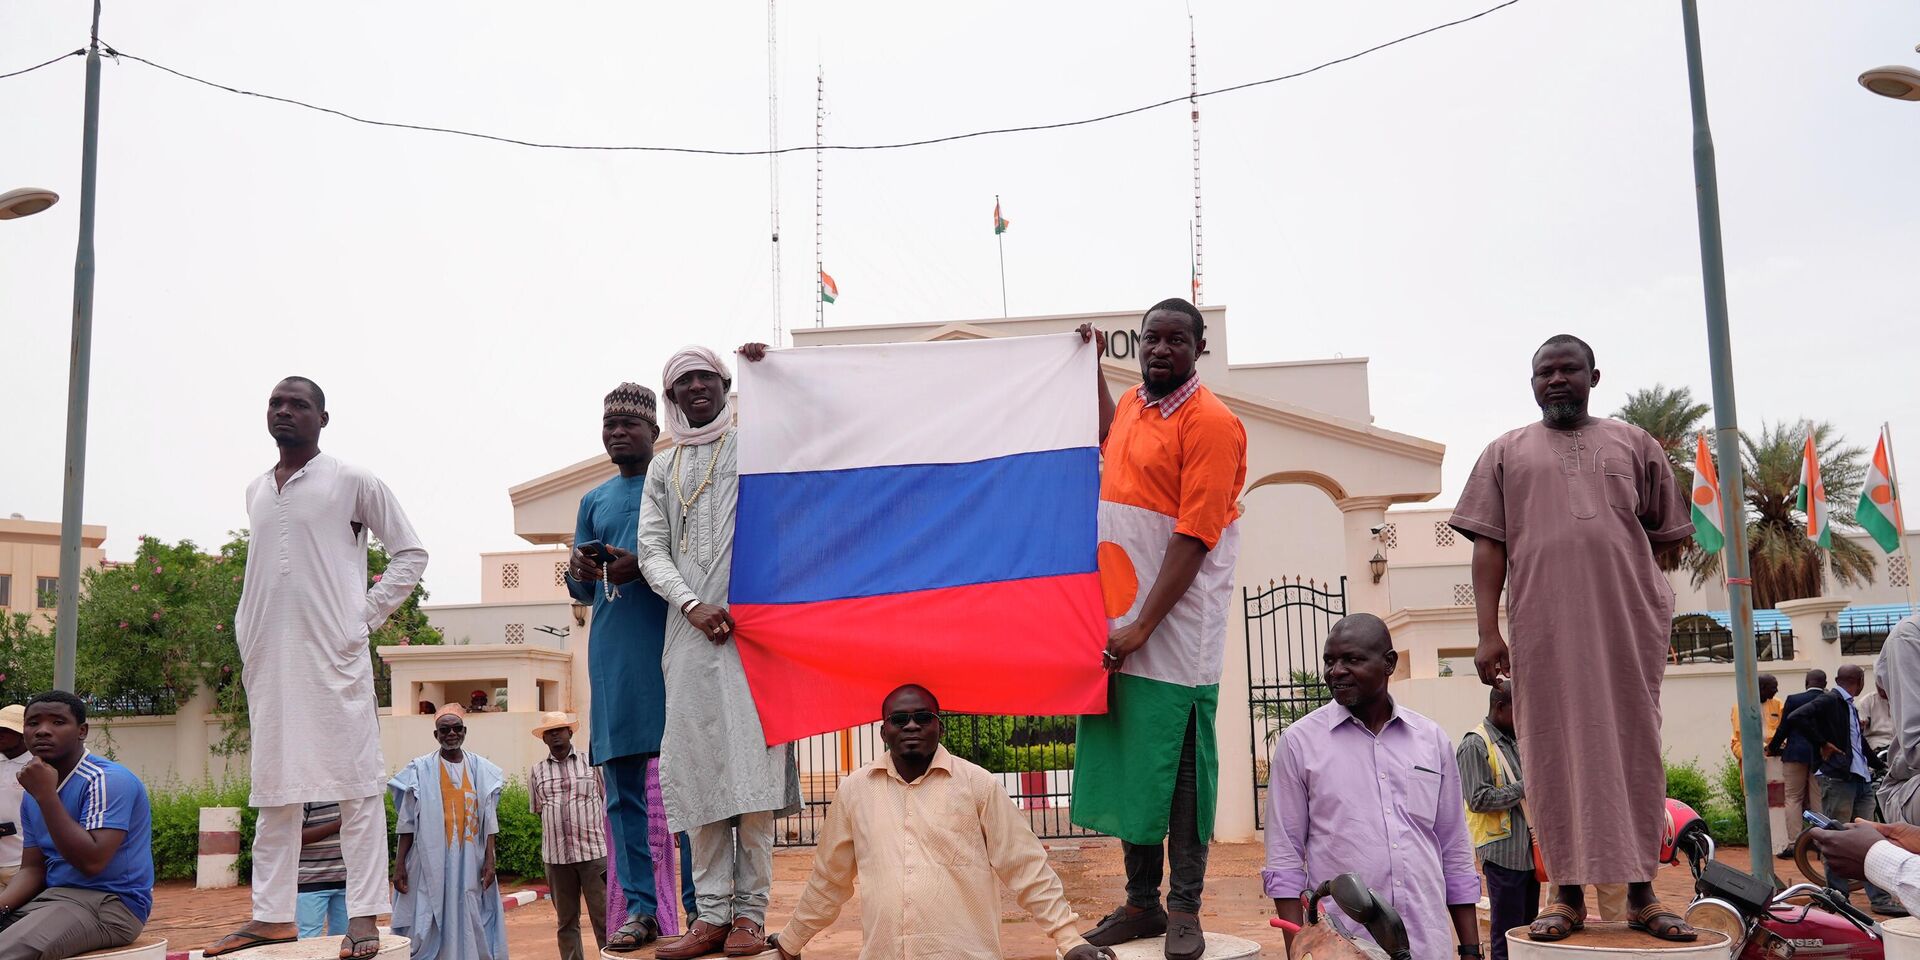 Участники демонстрации в Ниамее, Нигер. 27 июля 2023 года - ИноСМИ, 1920, 05.08.2023